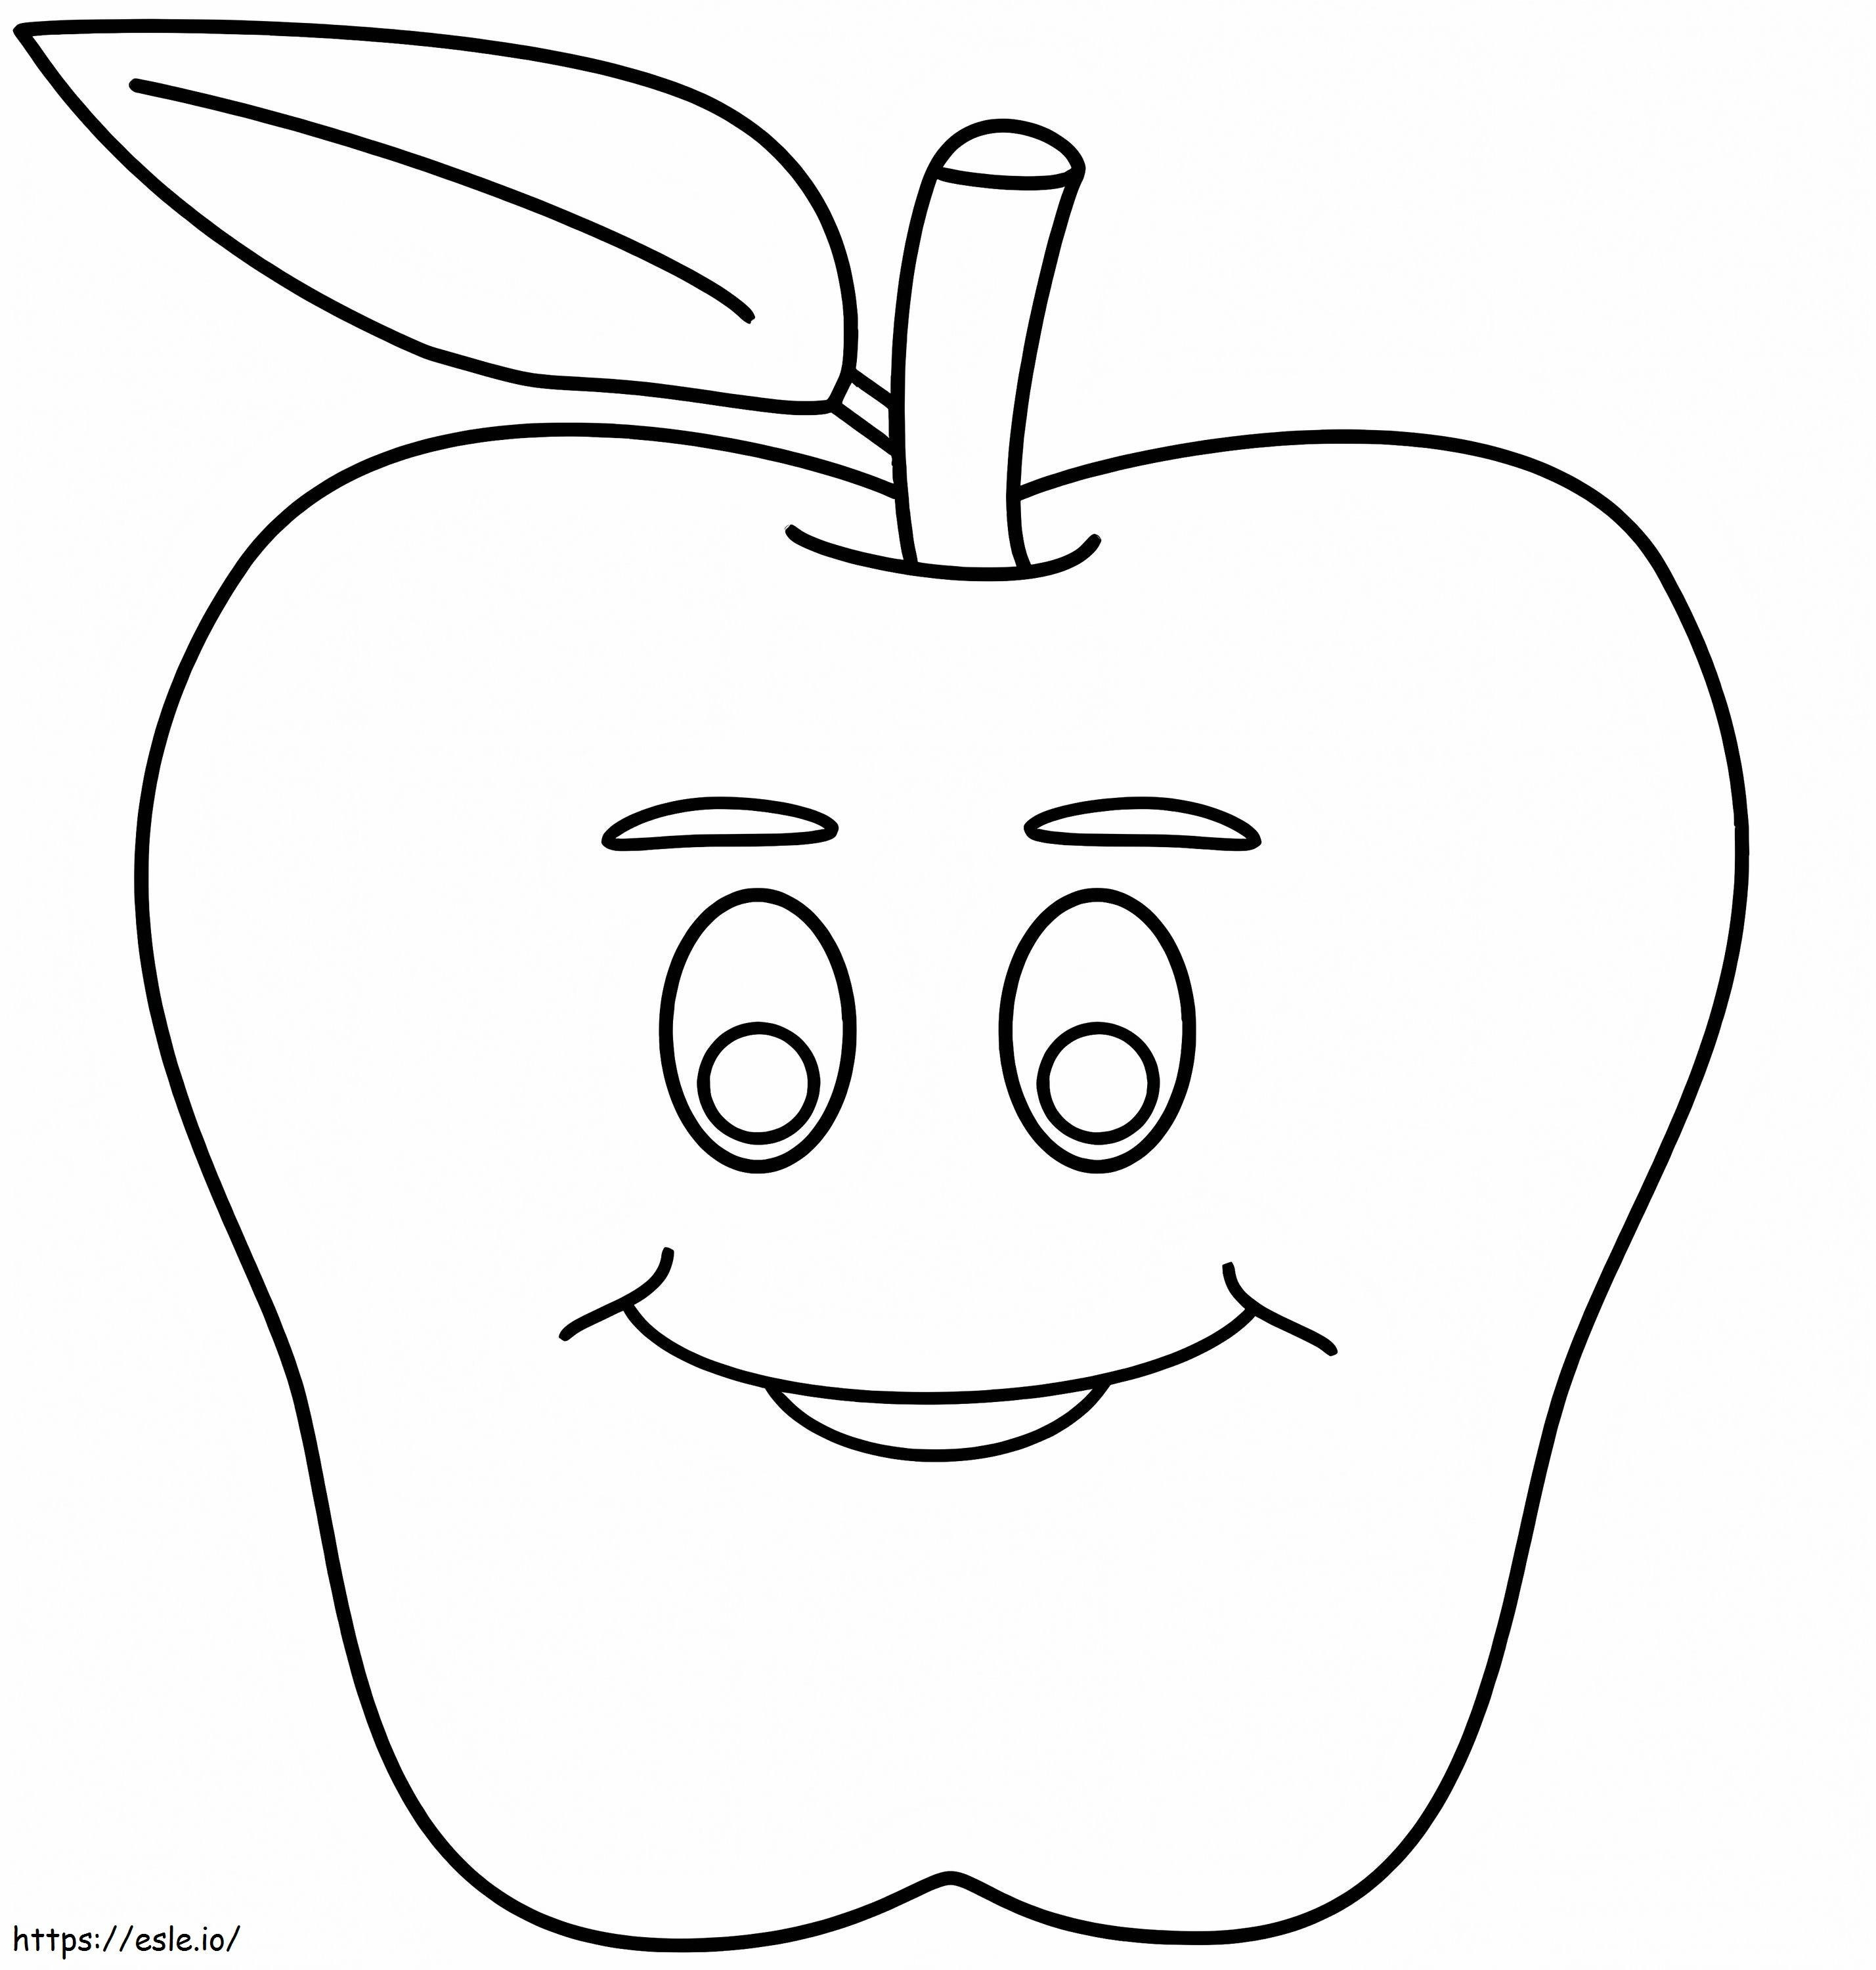 Lächelndes Apfelgesicht ausmalbilder